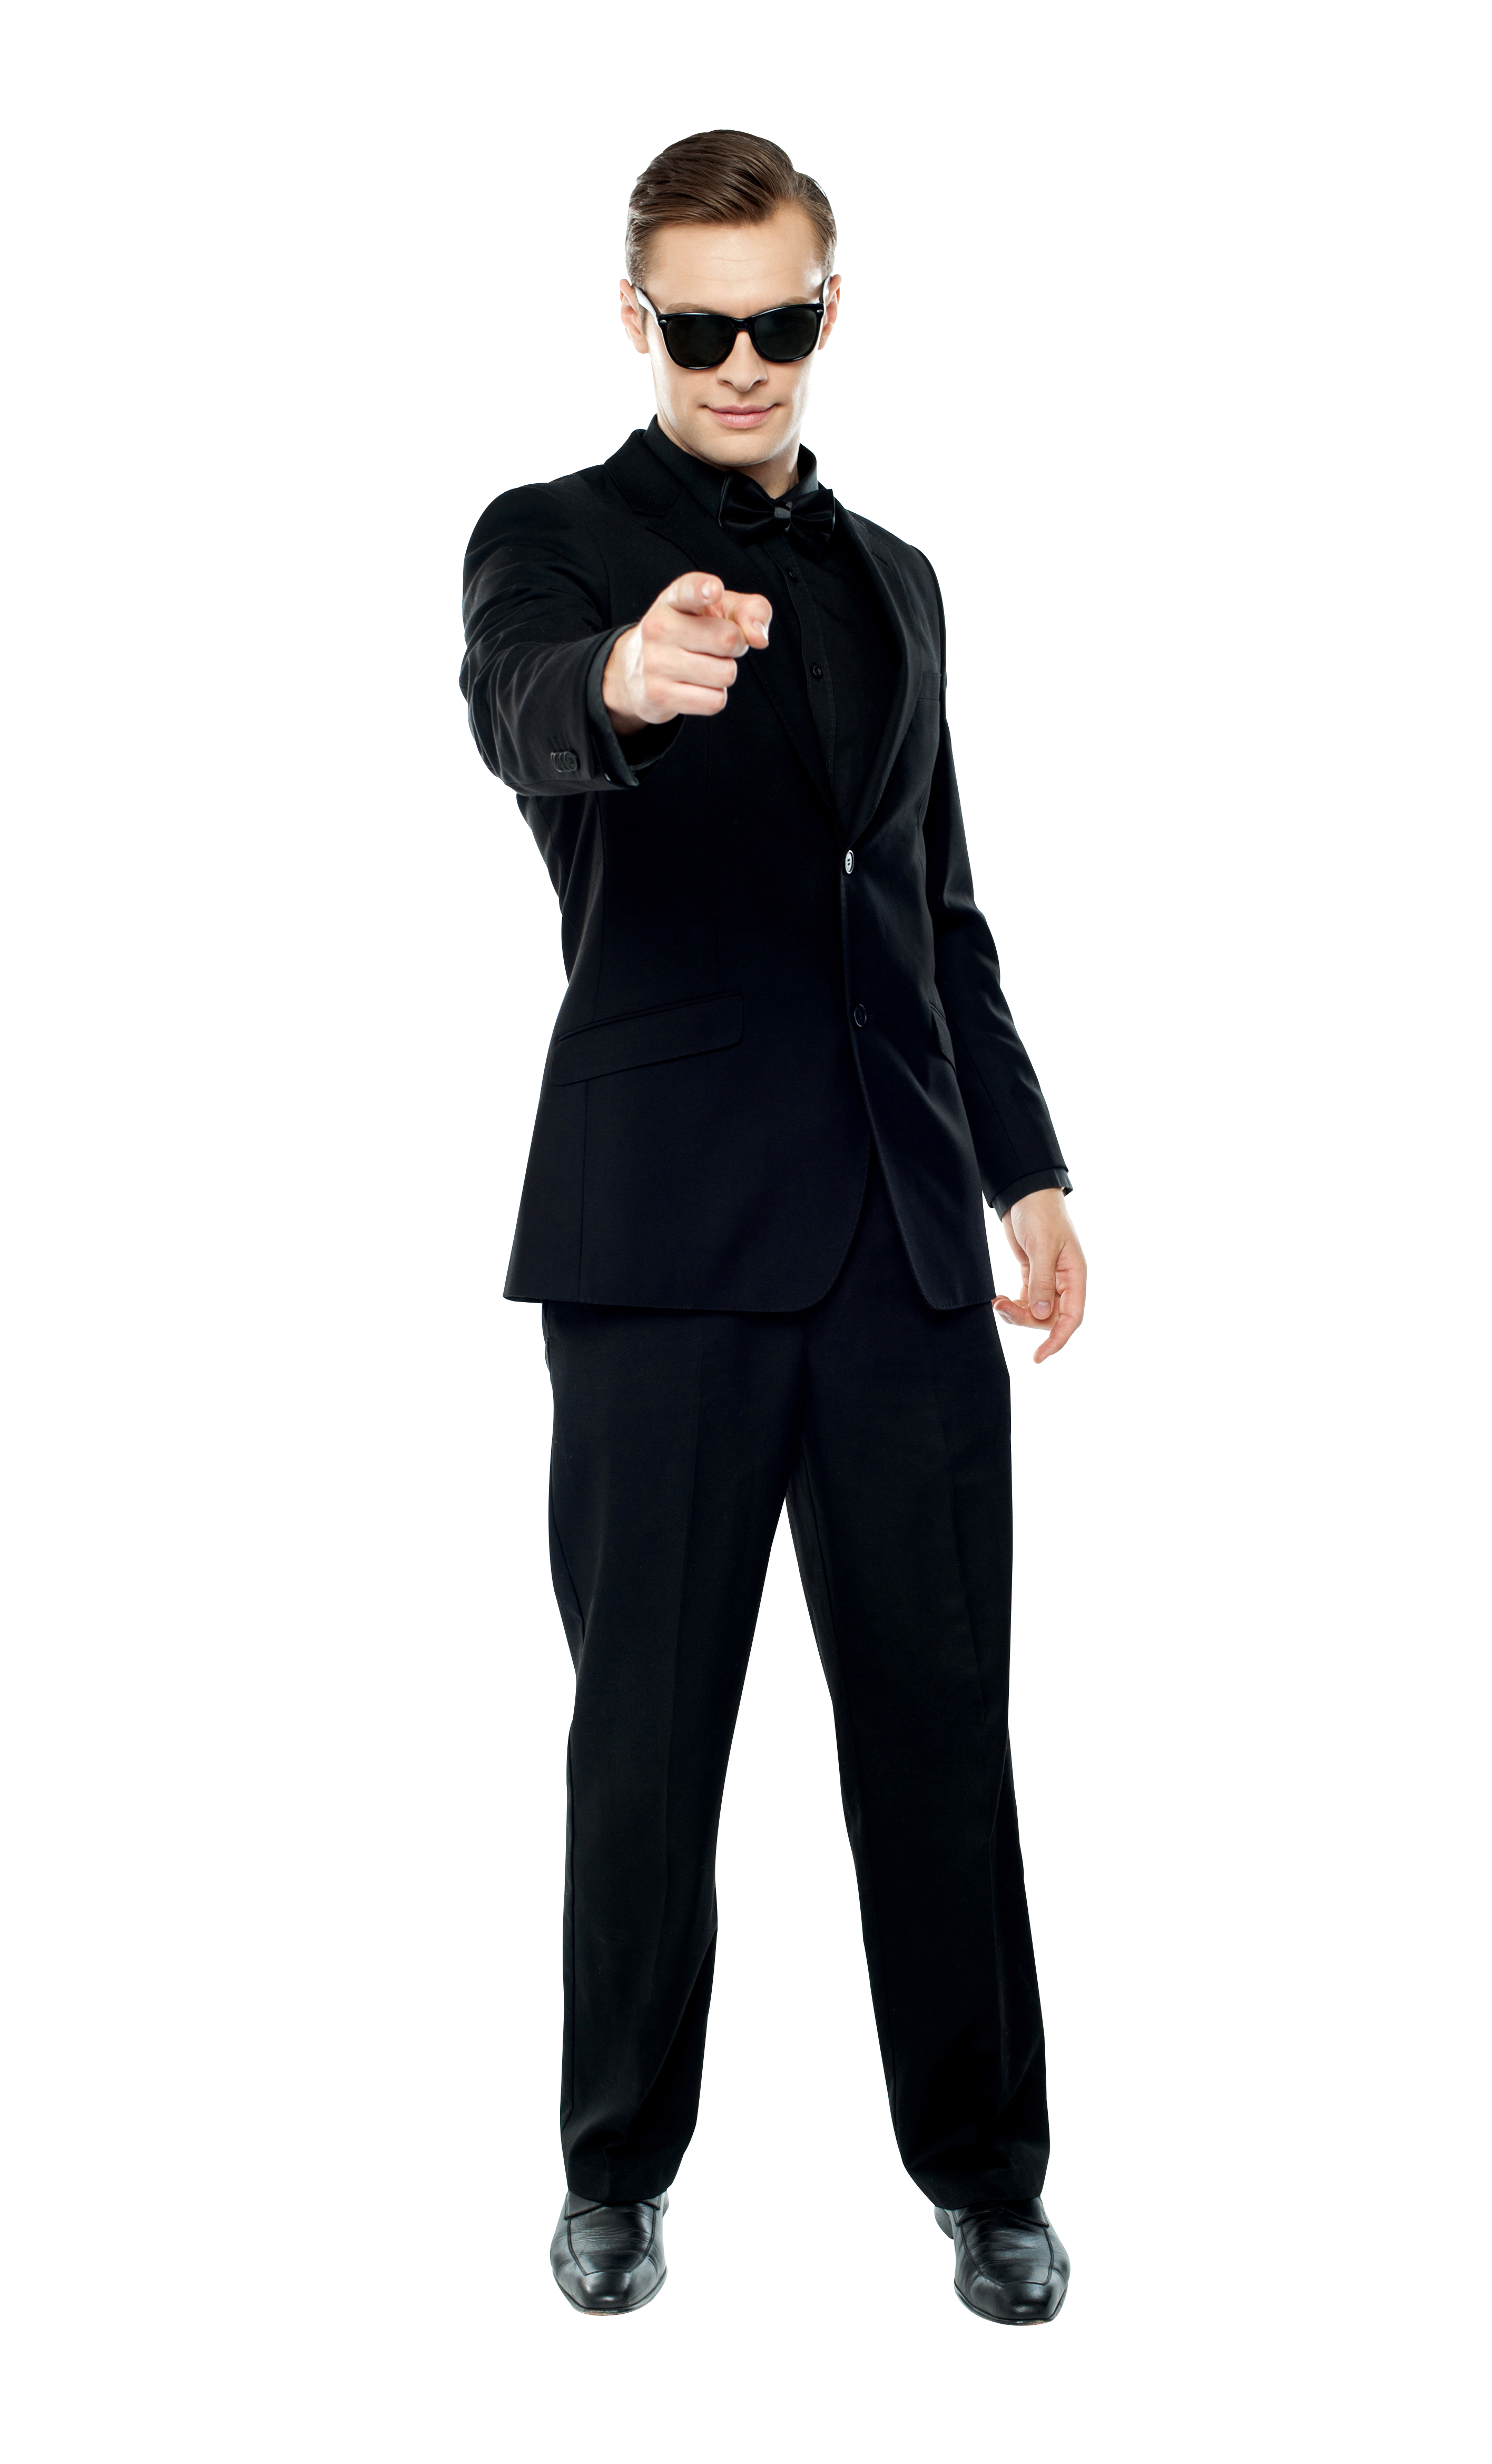 Model Man Black Suit Background PNG Image